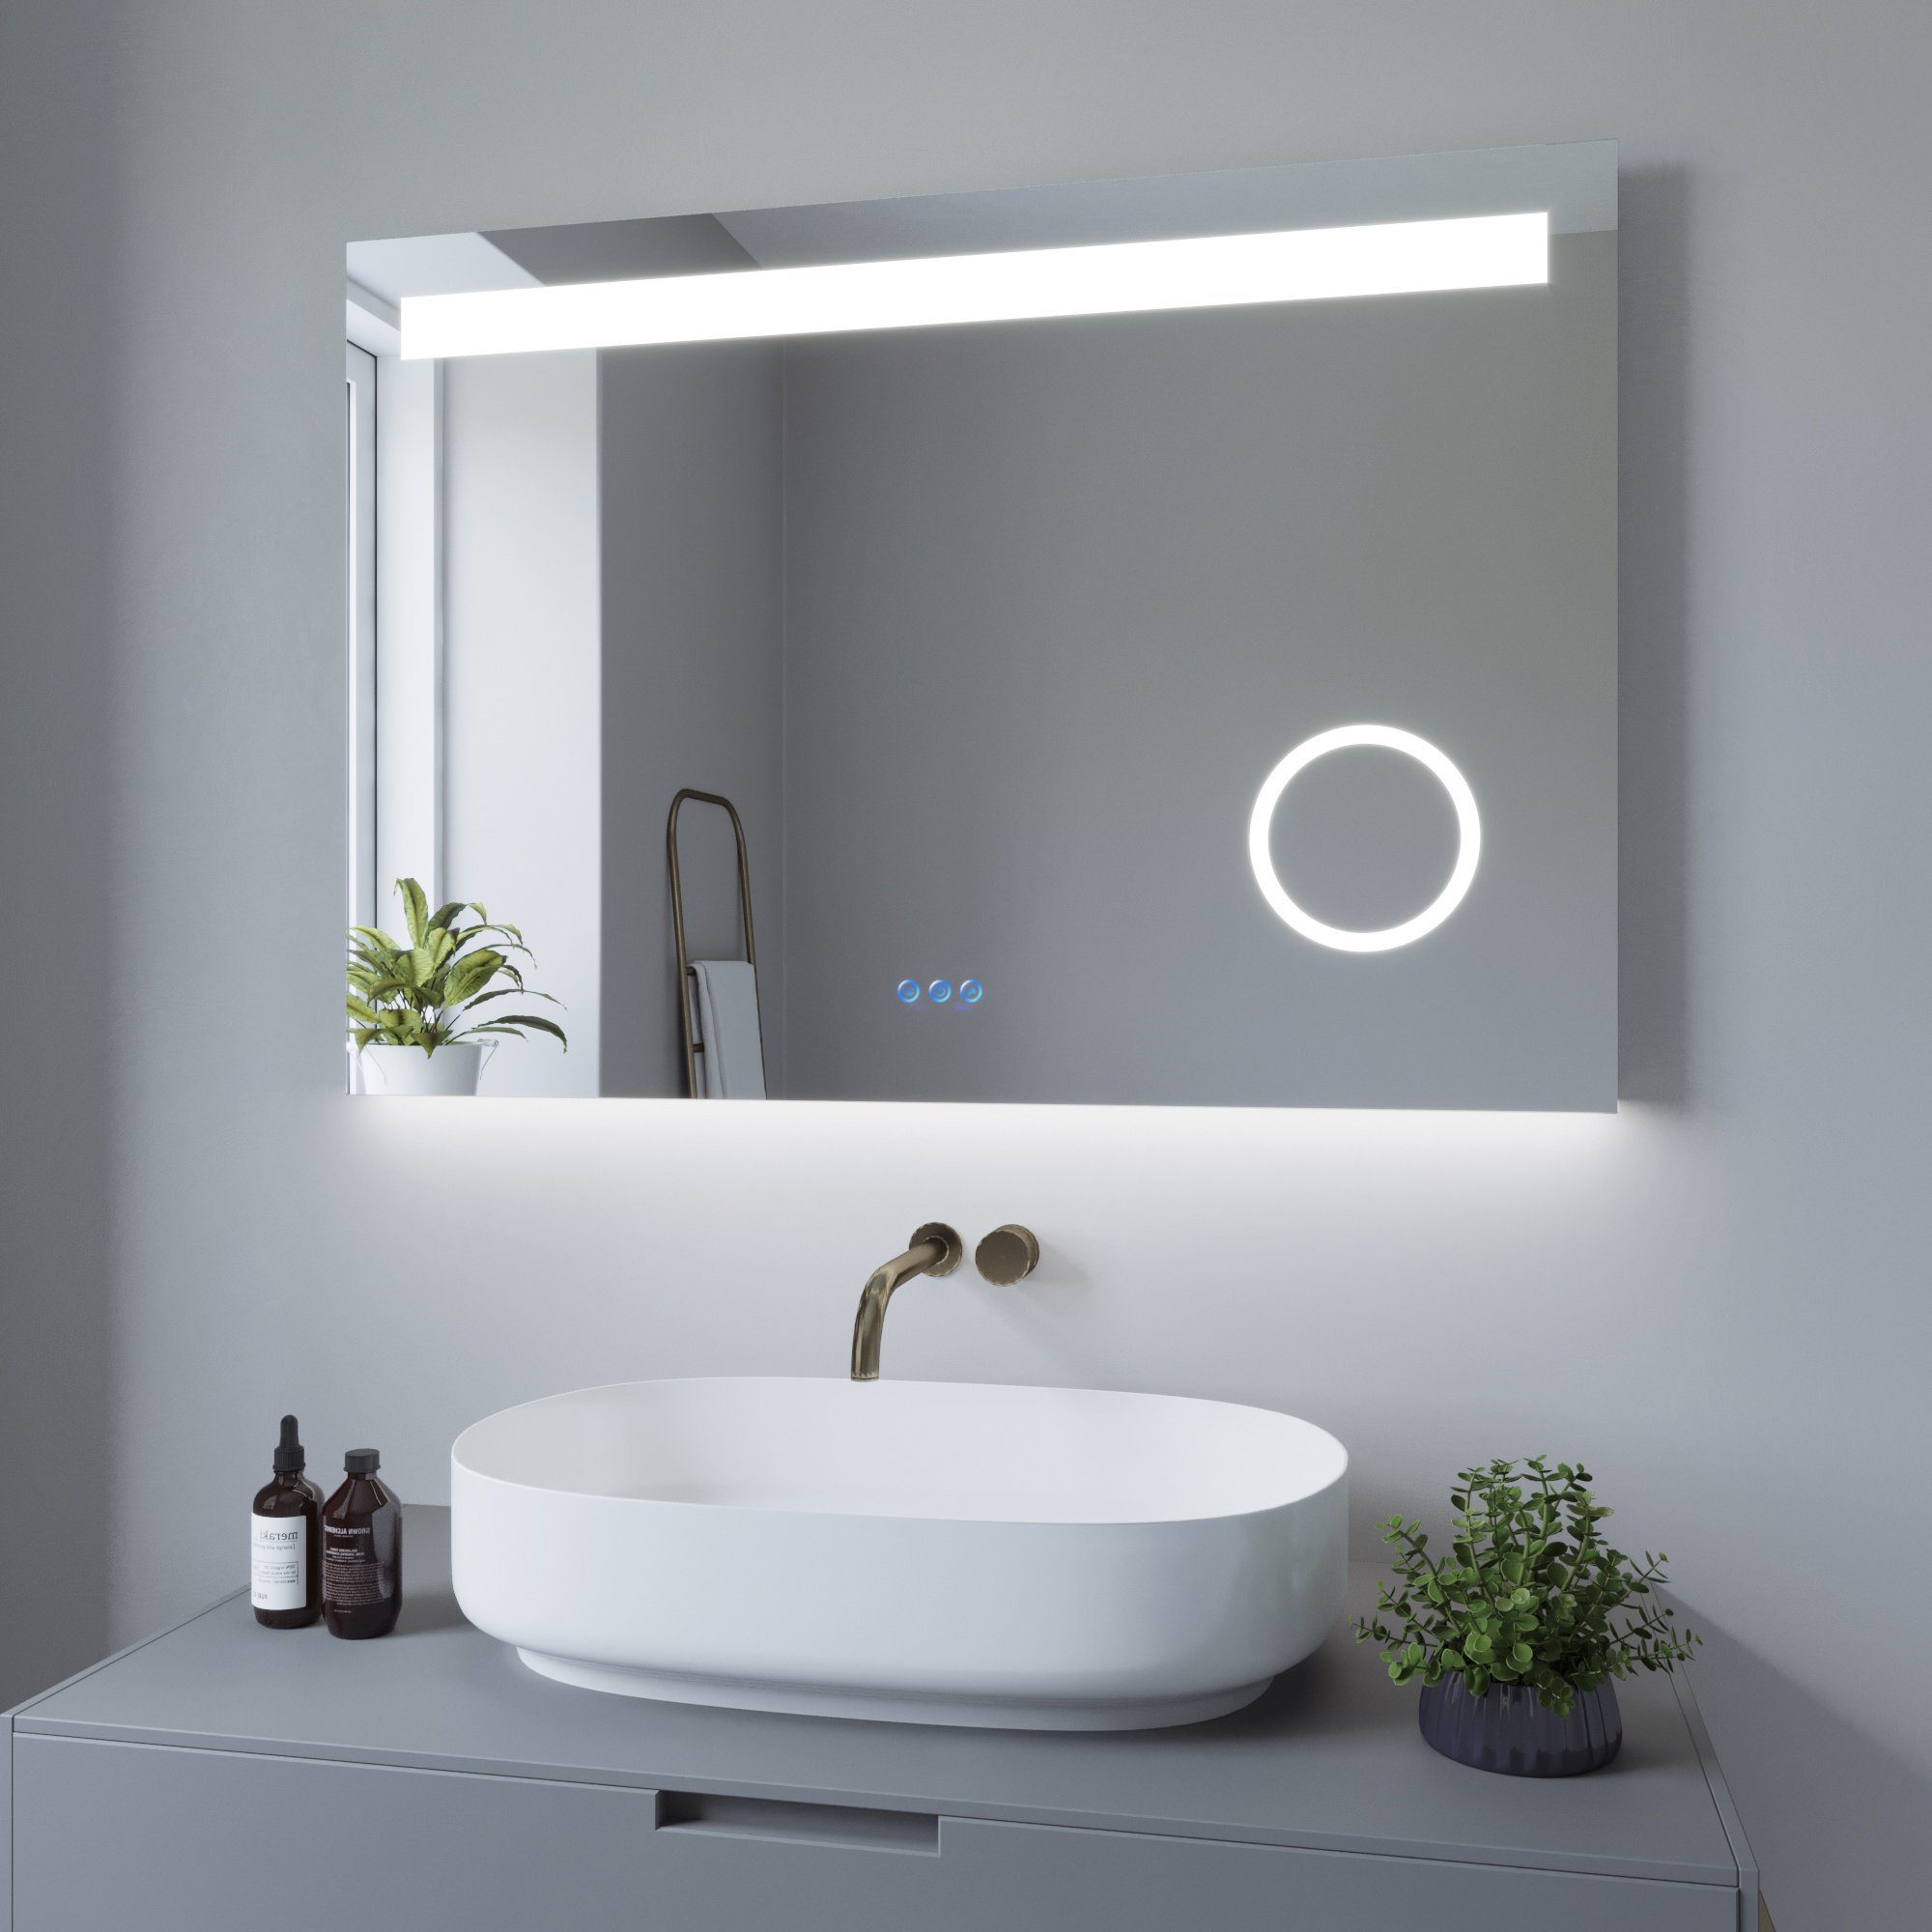 Badspiegel Lichtspiegel, mit Beleuchtung Beleuchtung, 3000K AQUALAVOS Kaltweiß&Warmweiß Kosmetikspiegel LED Antibeschlage Badspiegel Touch-Schalter 6400K Dimmbar